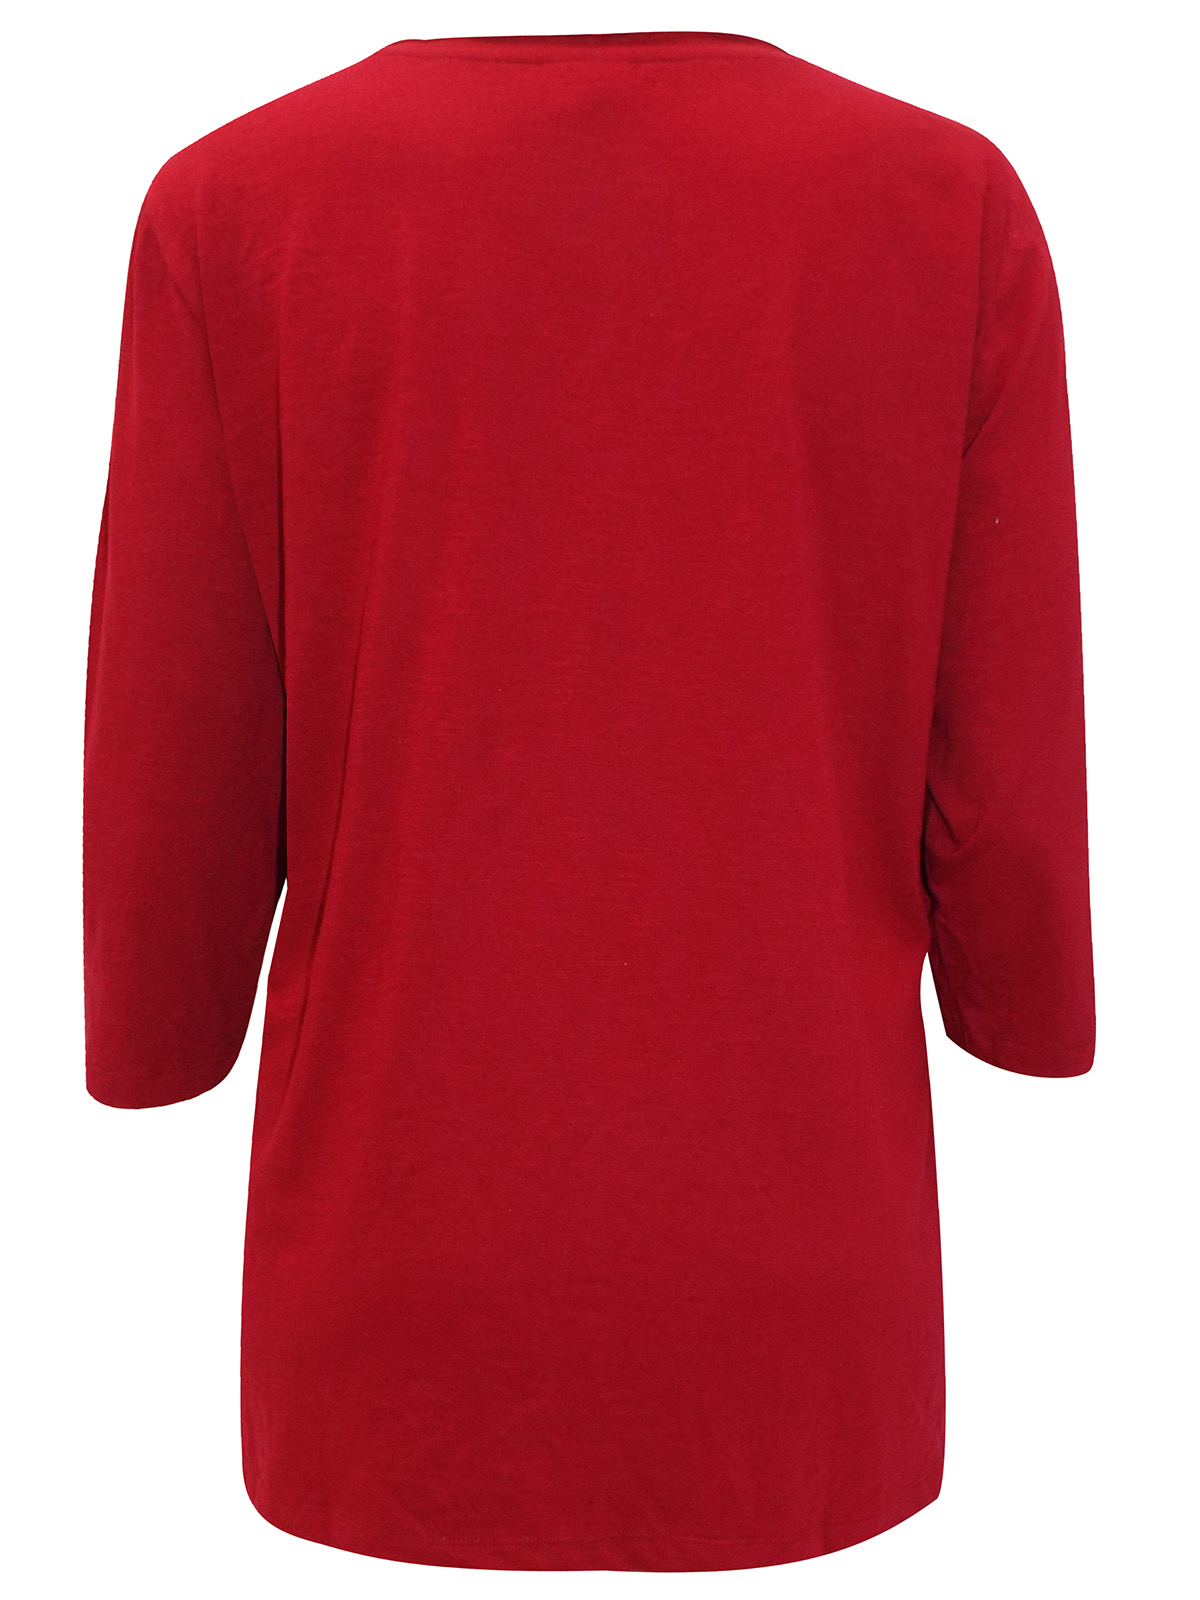 Wholesale Knitwear by Mia Moda - - Mia Moda RED Pure Cotton Button ...